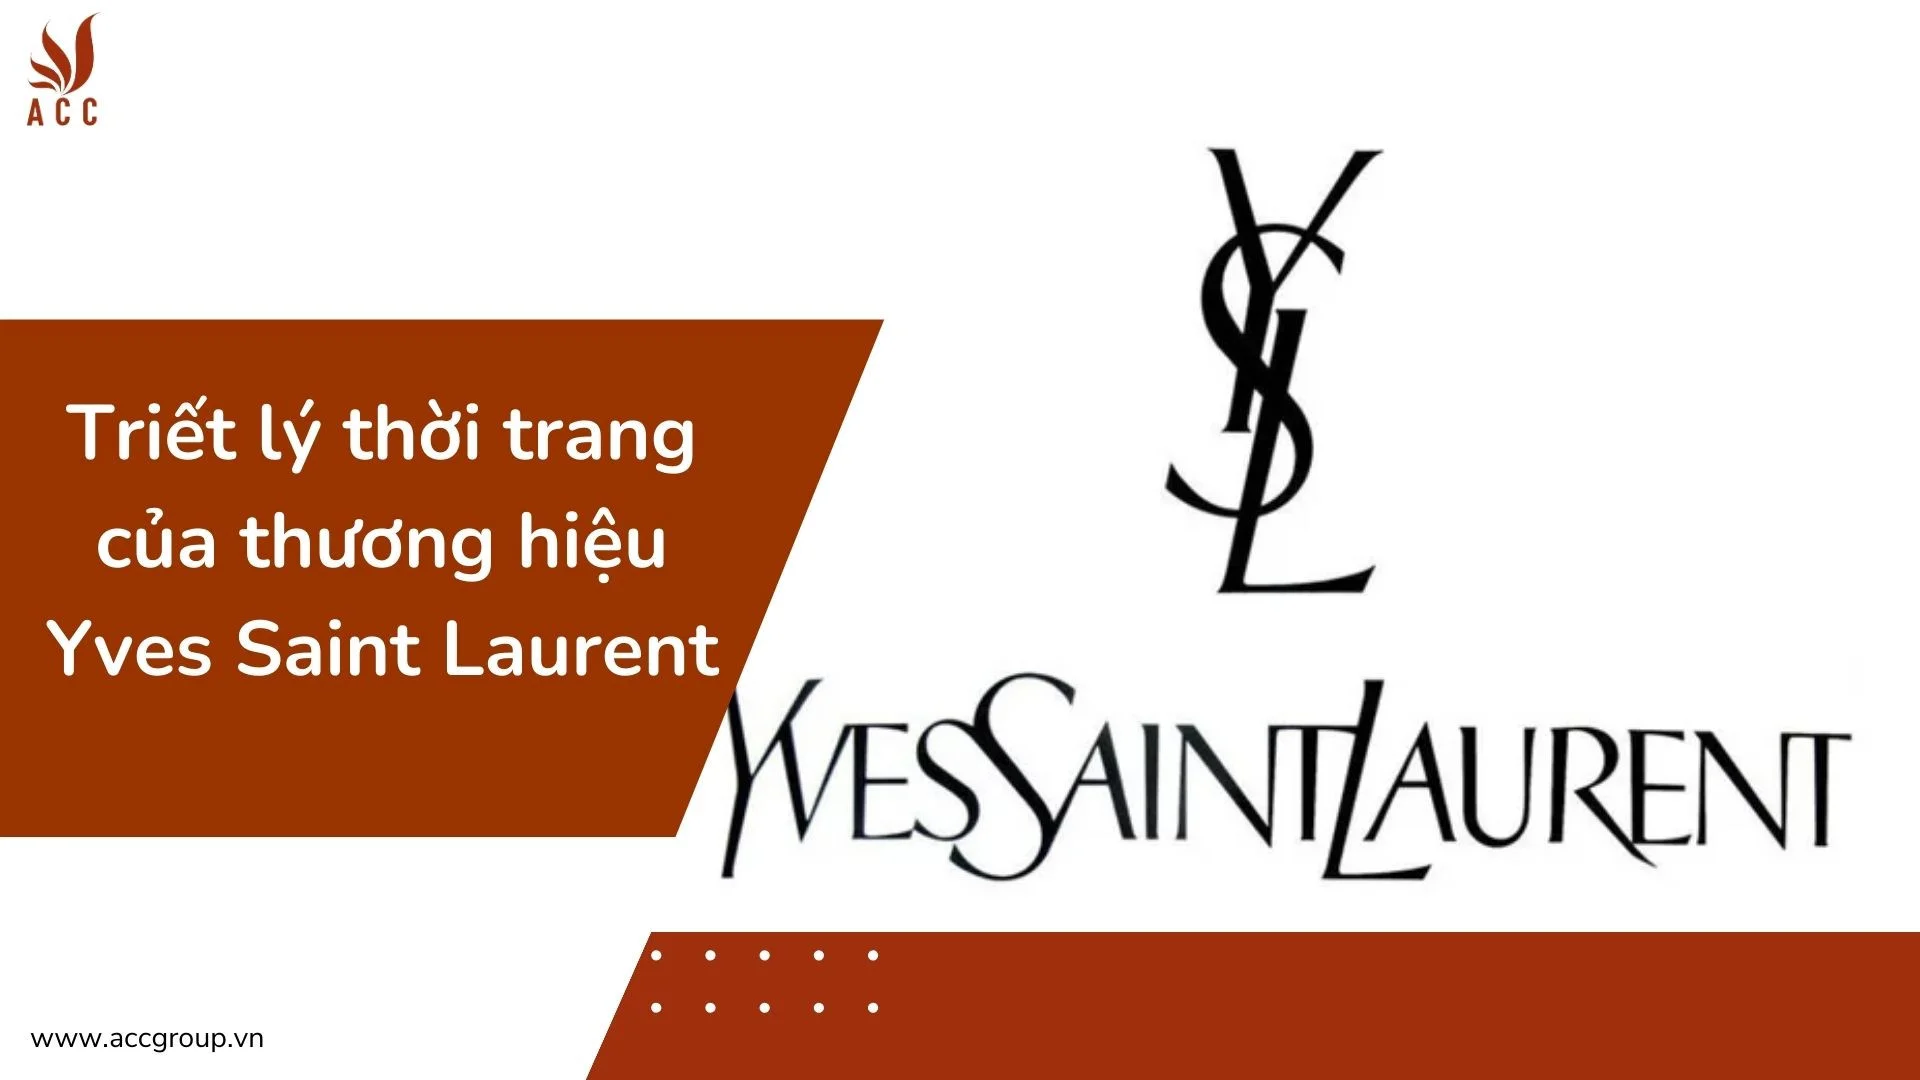 Triết lý thời trang của thương hiệu Yves Saint Laurent